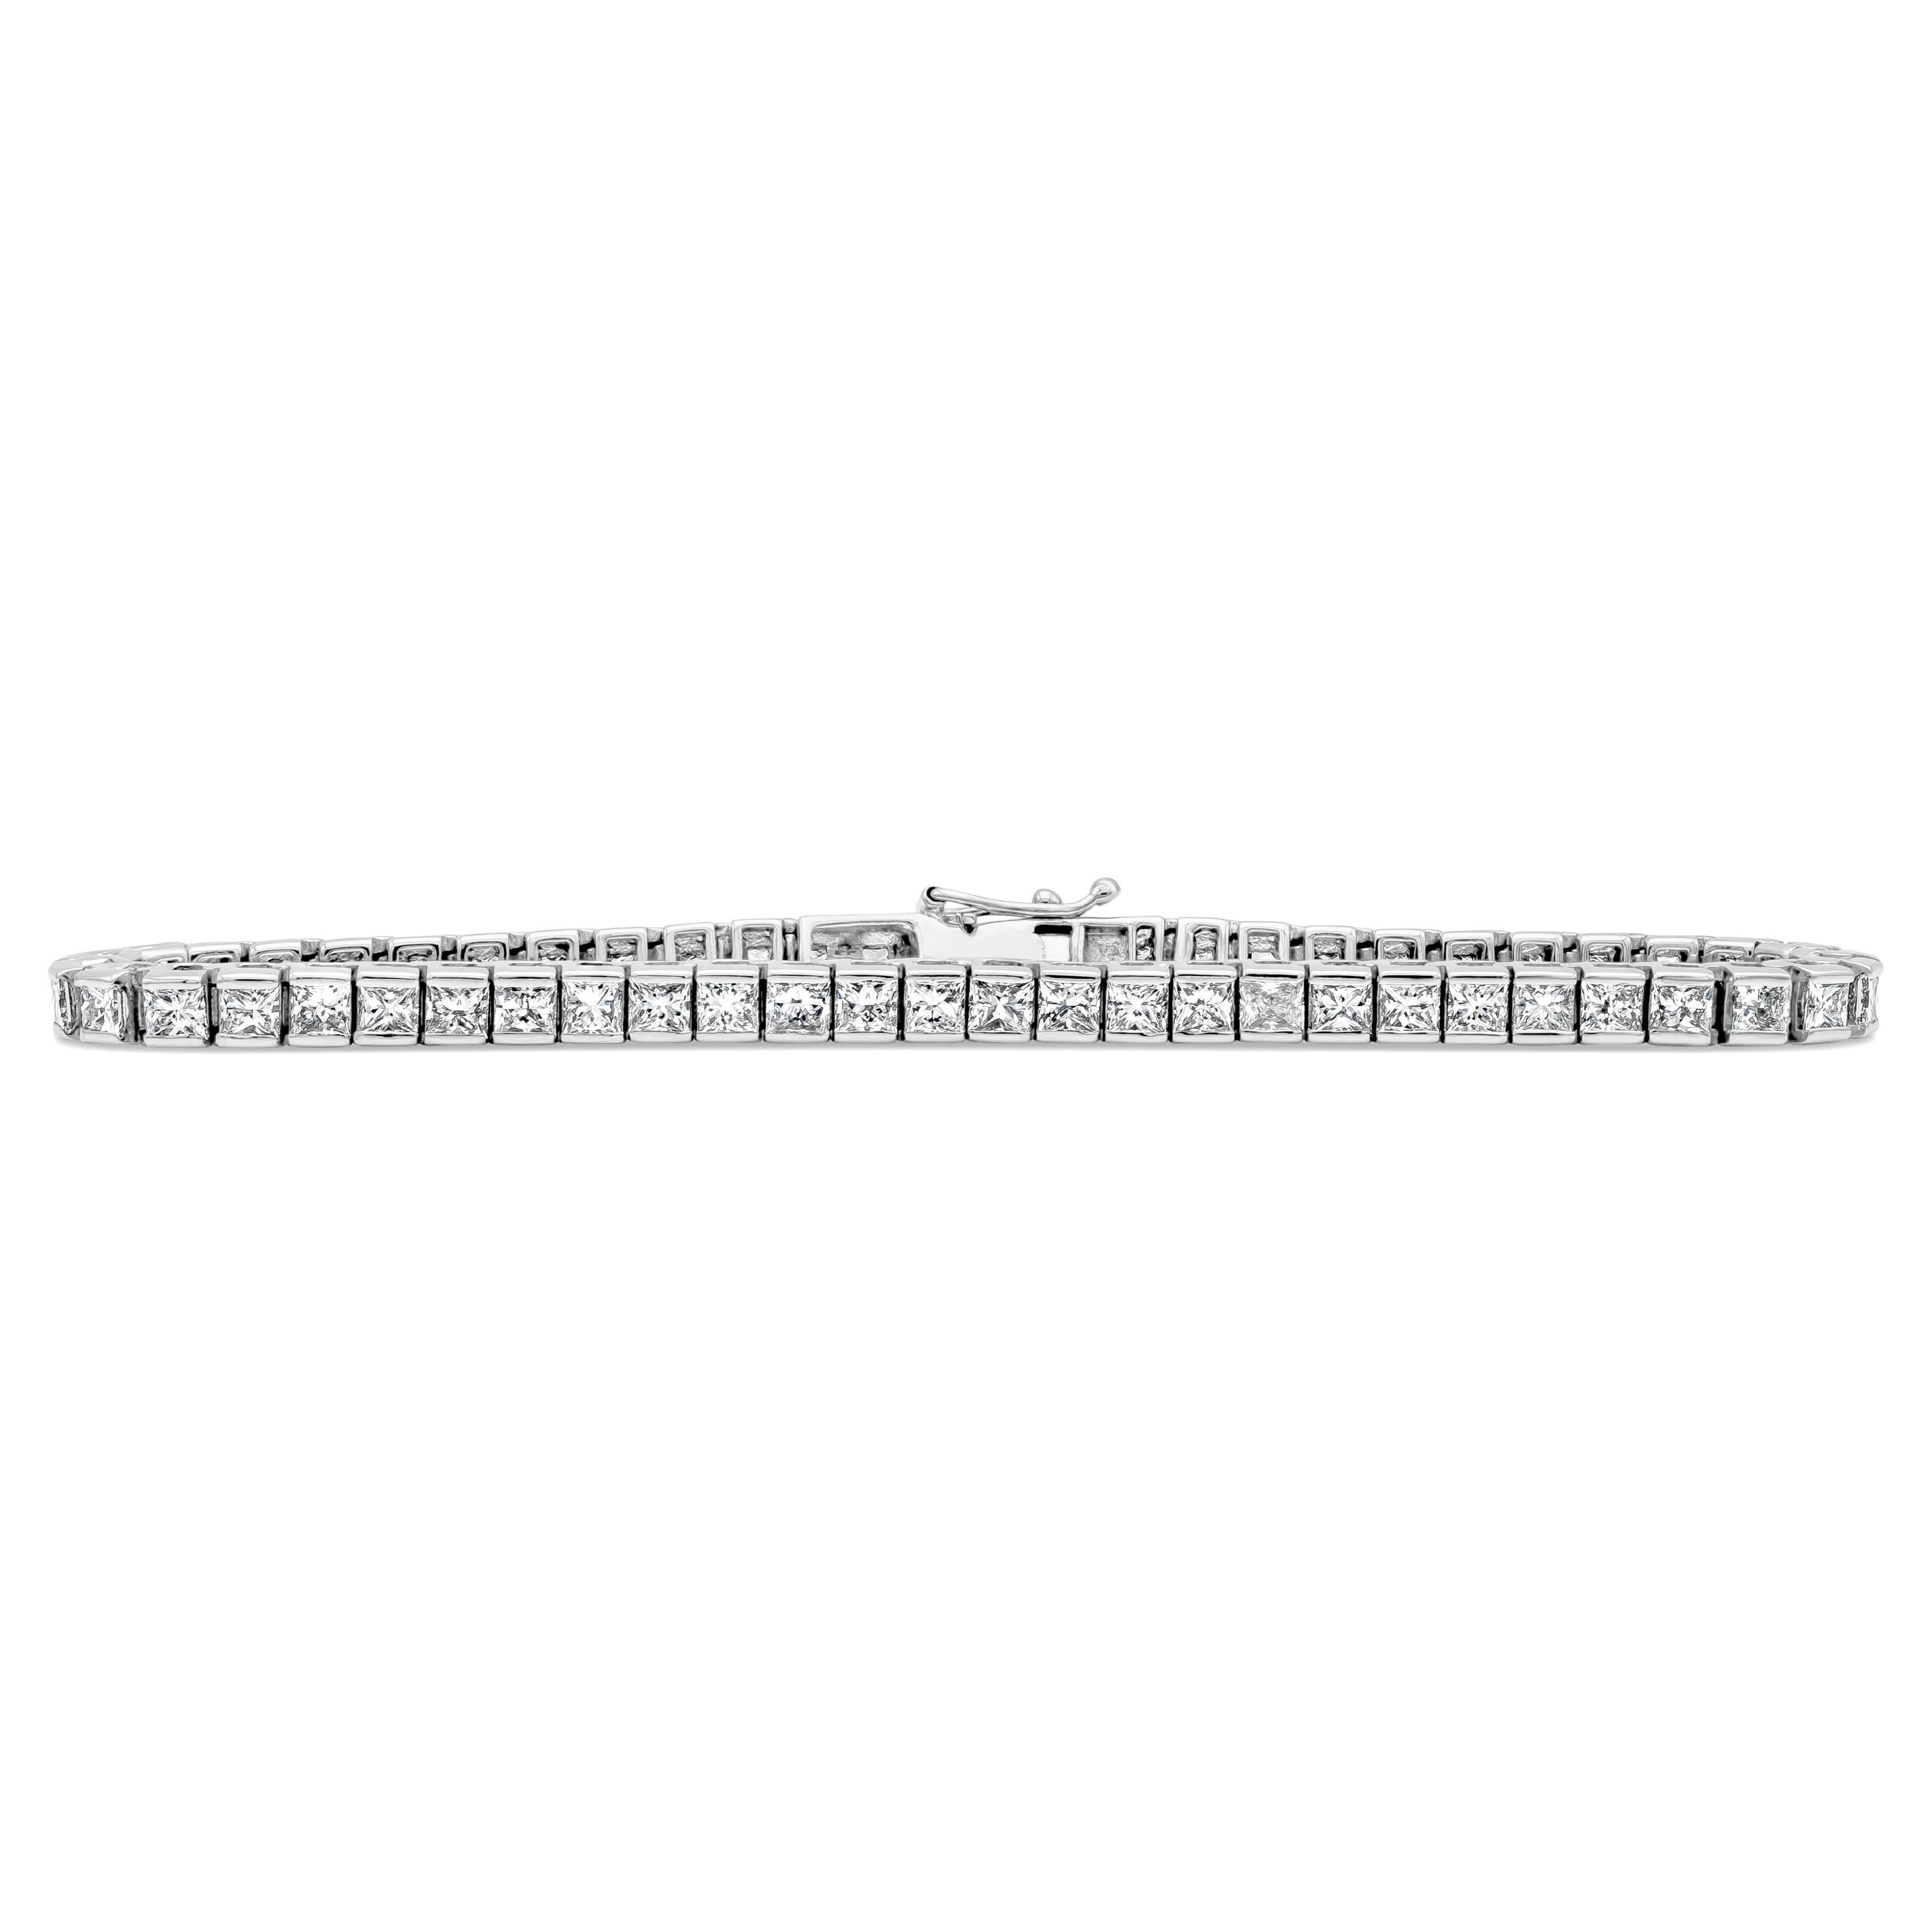 8.42 Carats Total Princess Cut Diamond Channel Set Tennis Bracelet Style For Sale